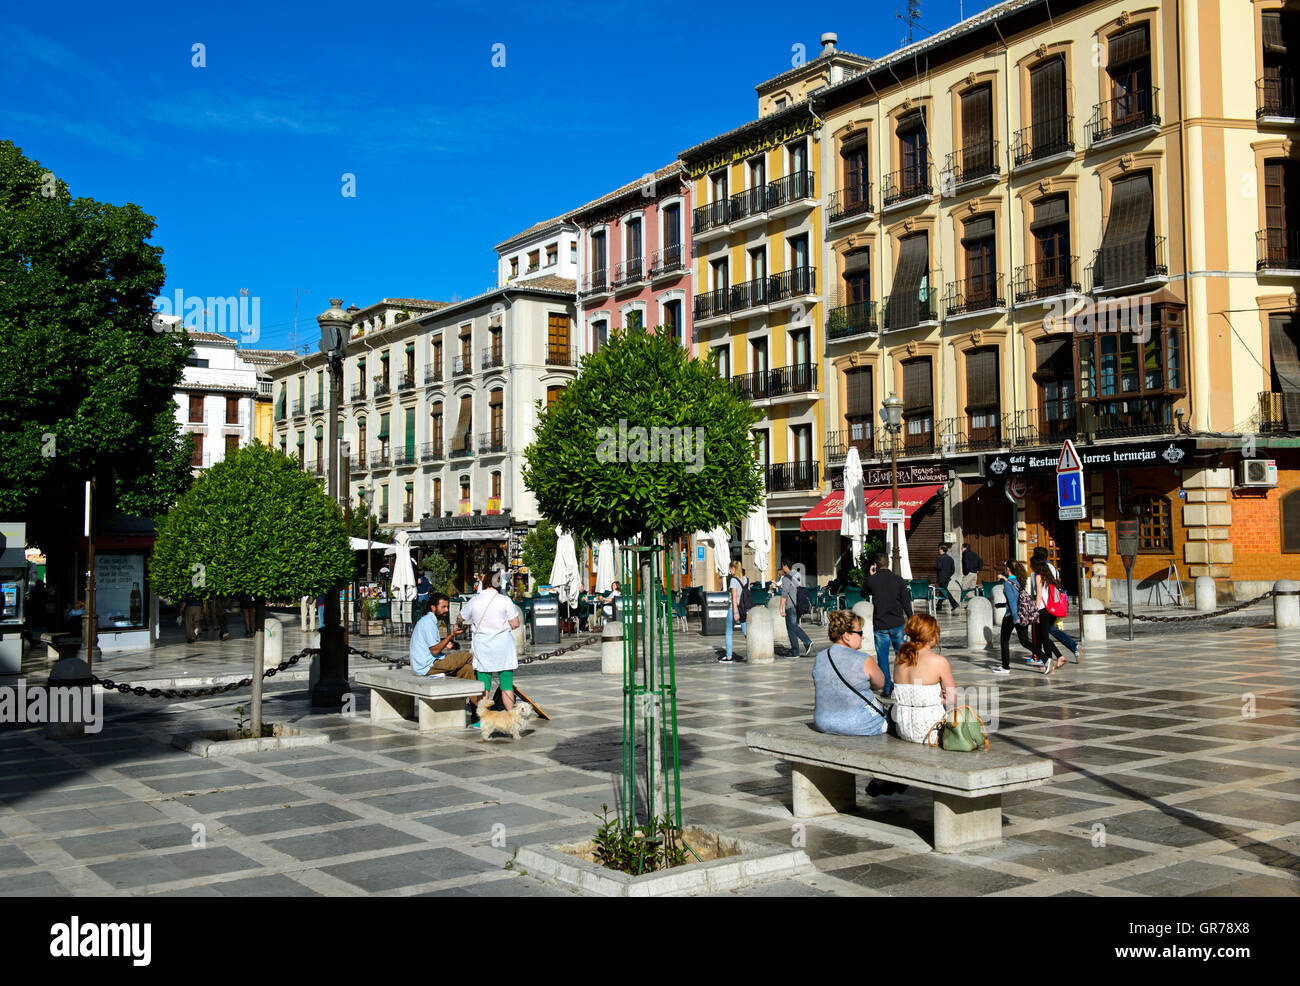 The New Square, Plaza Nueva, Granada, Spain Stock Photo